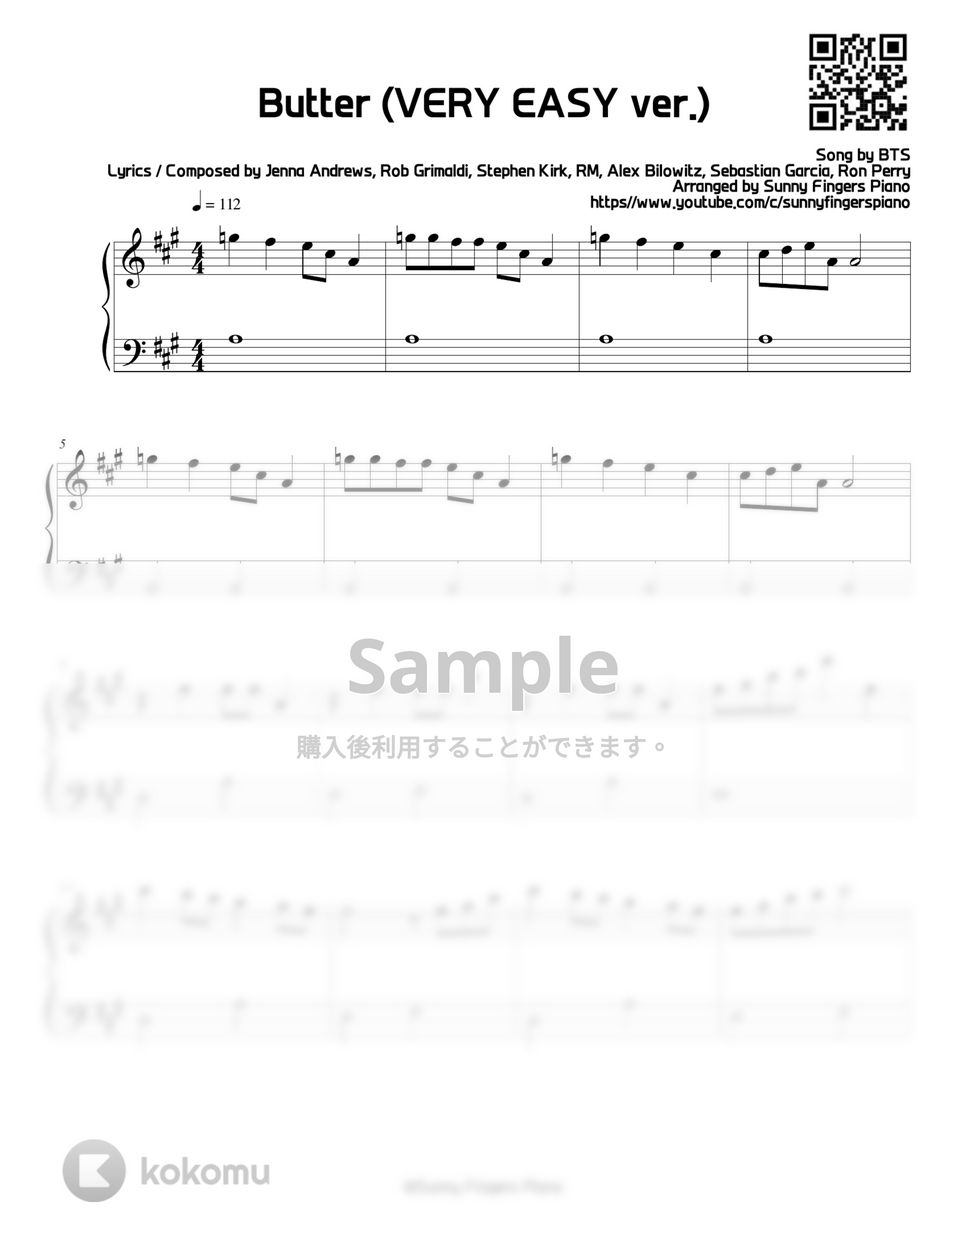 防弾少年団(BTS) - Butter (VERY EASY) by Sunny FIngers Piano